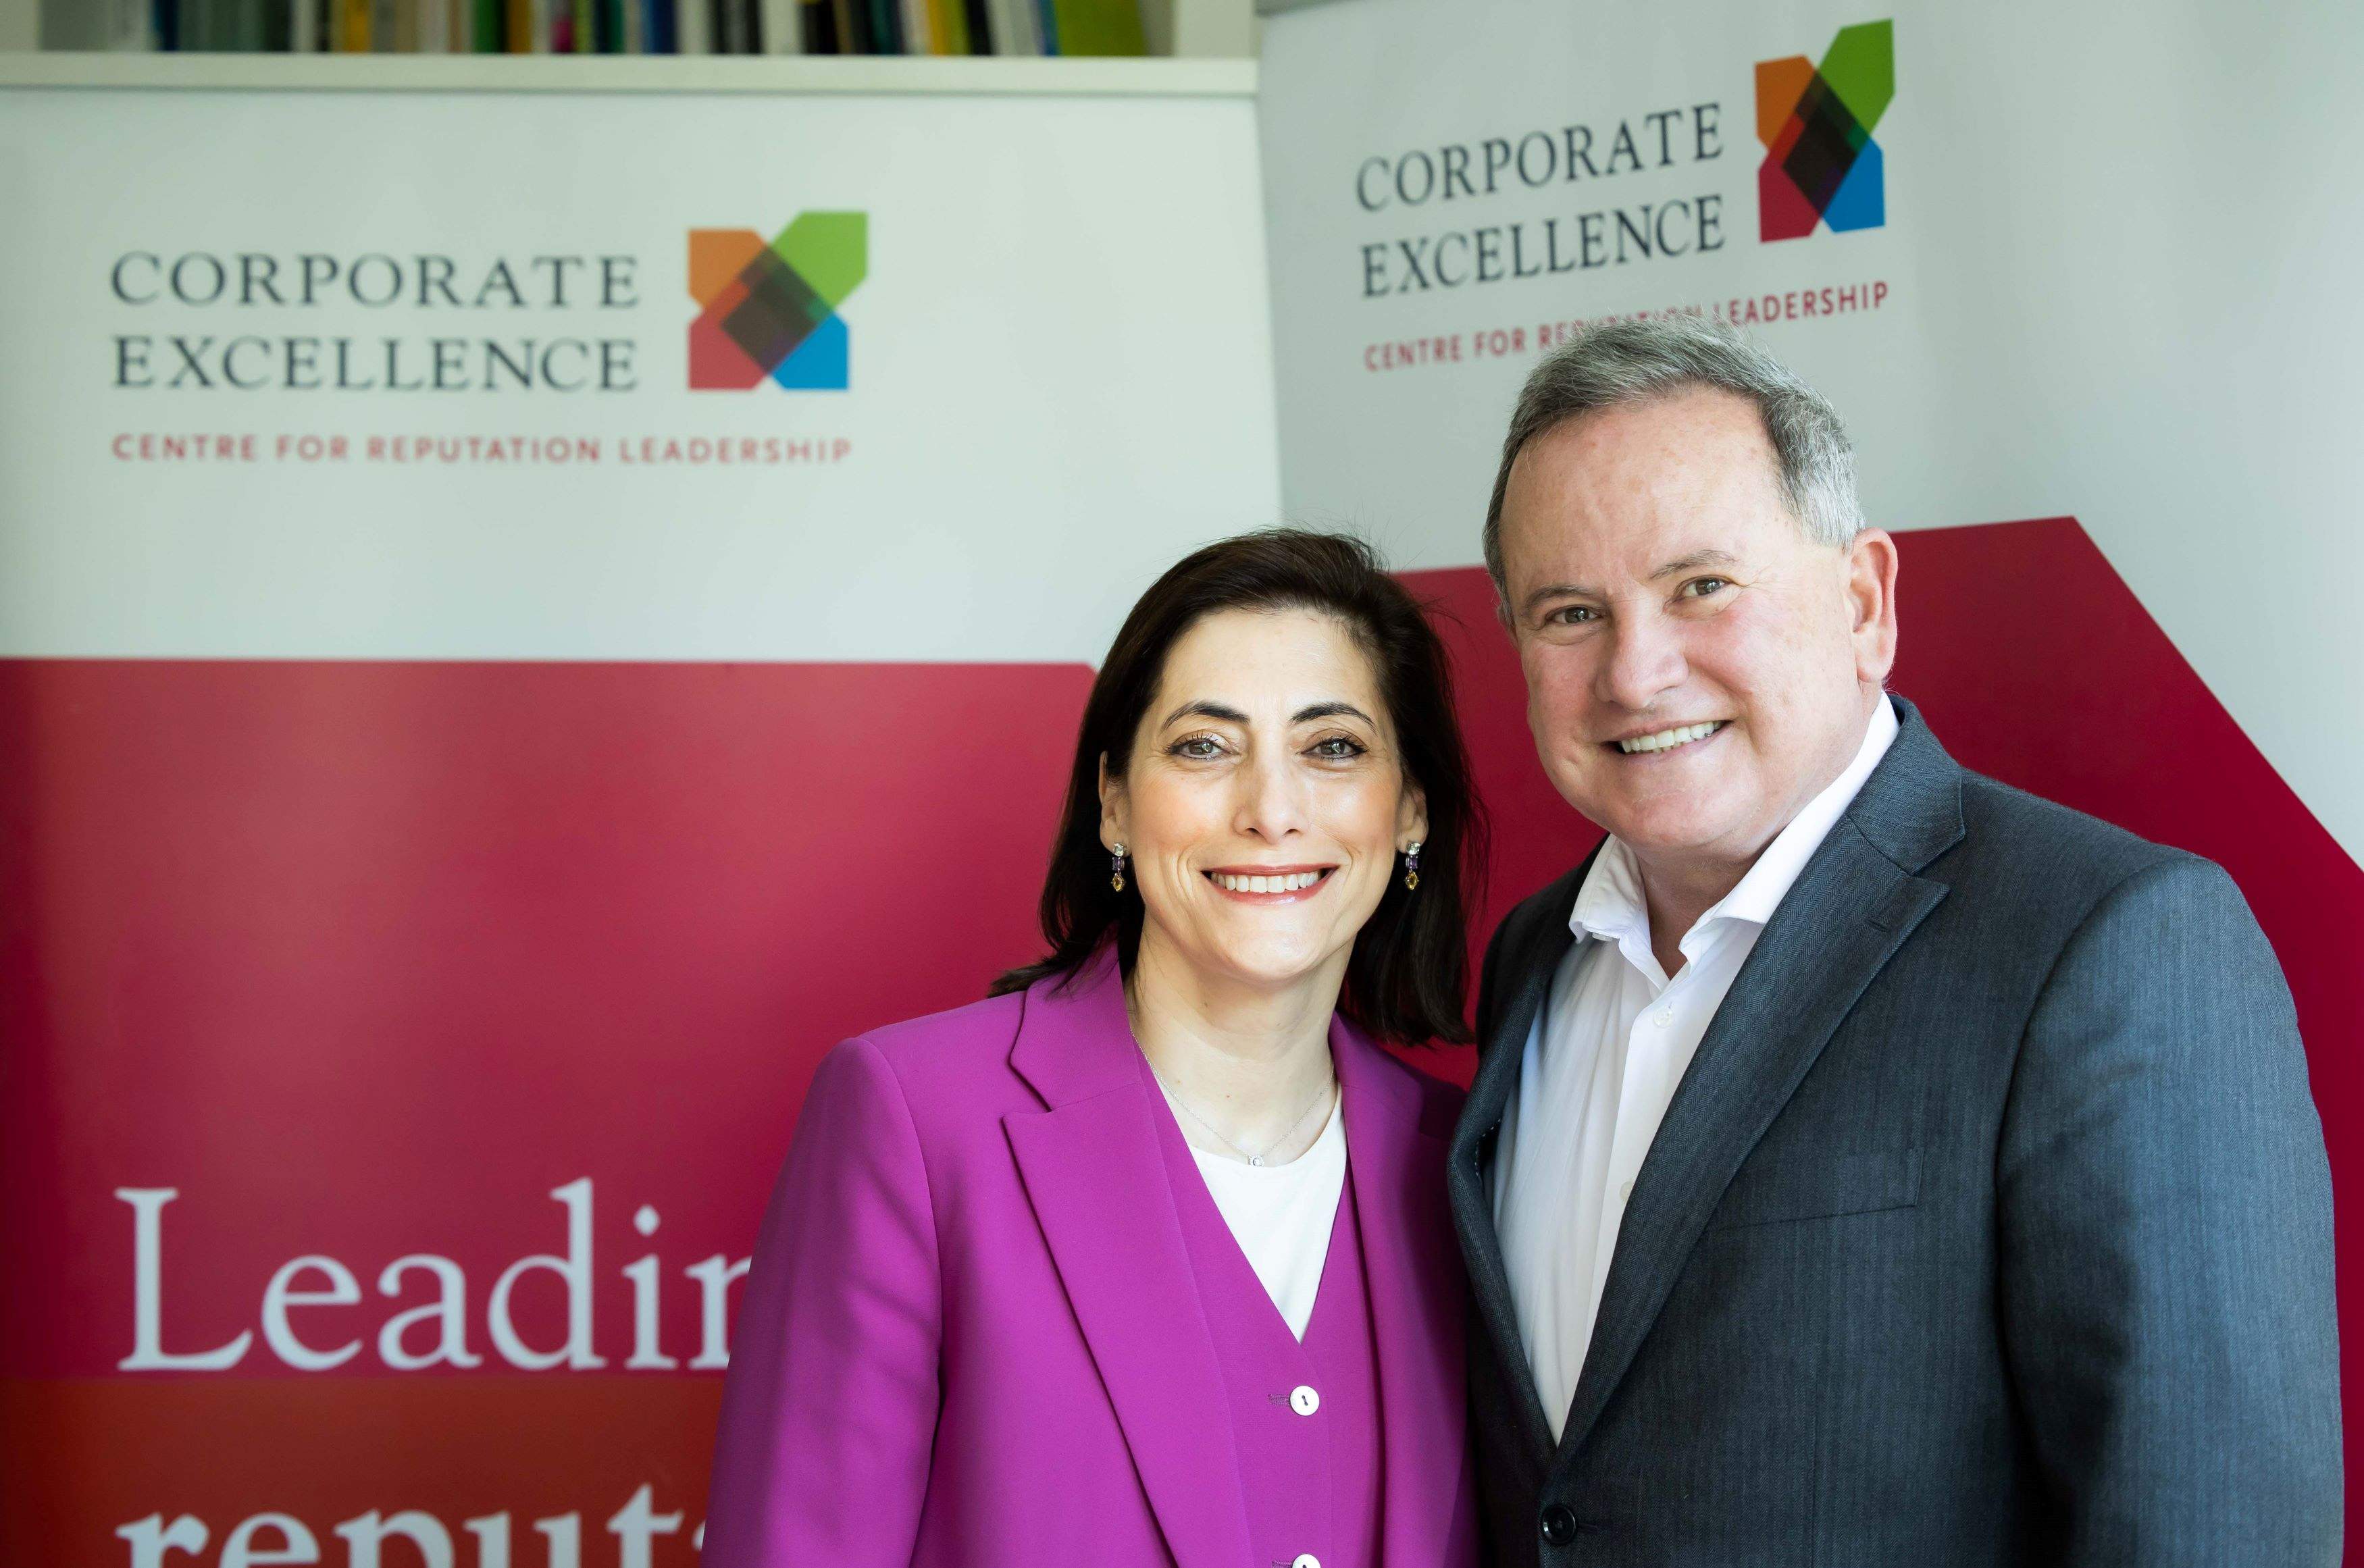 El Patronato de la Fundación Corporate Excellence nombra presidenta a Mª Luisa Martínez Gistau, en sustitución de Eduardo Navarro.